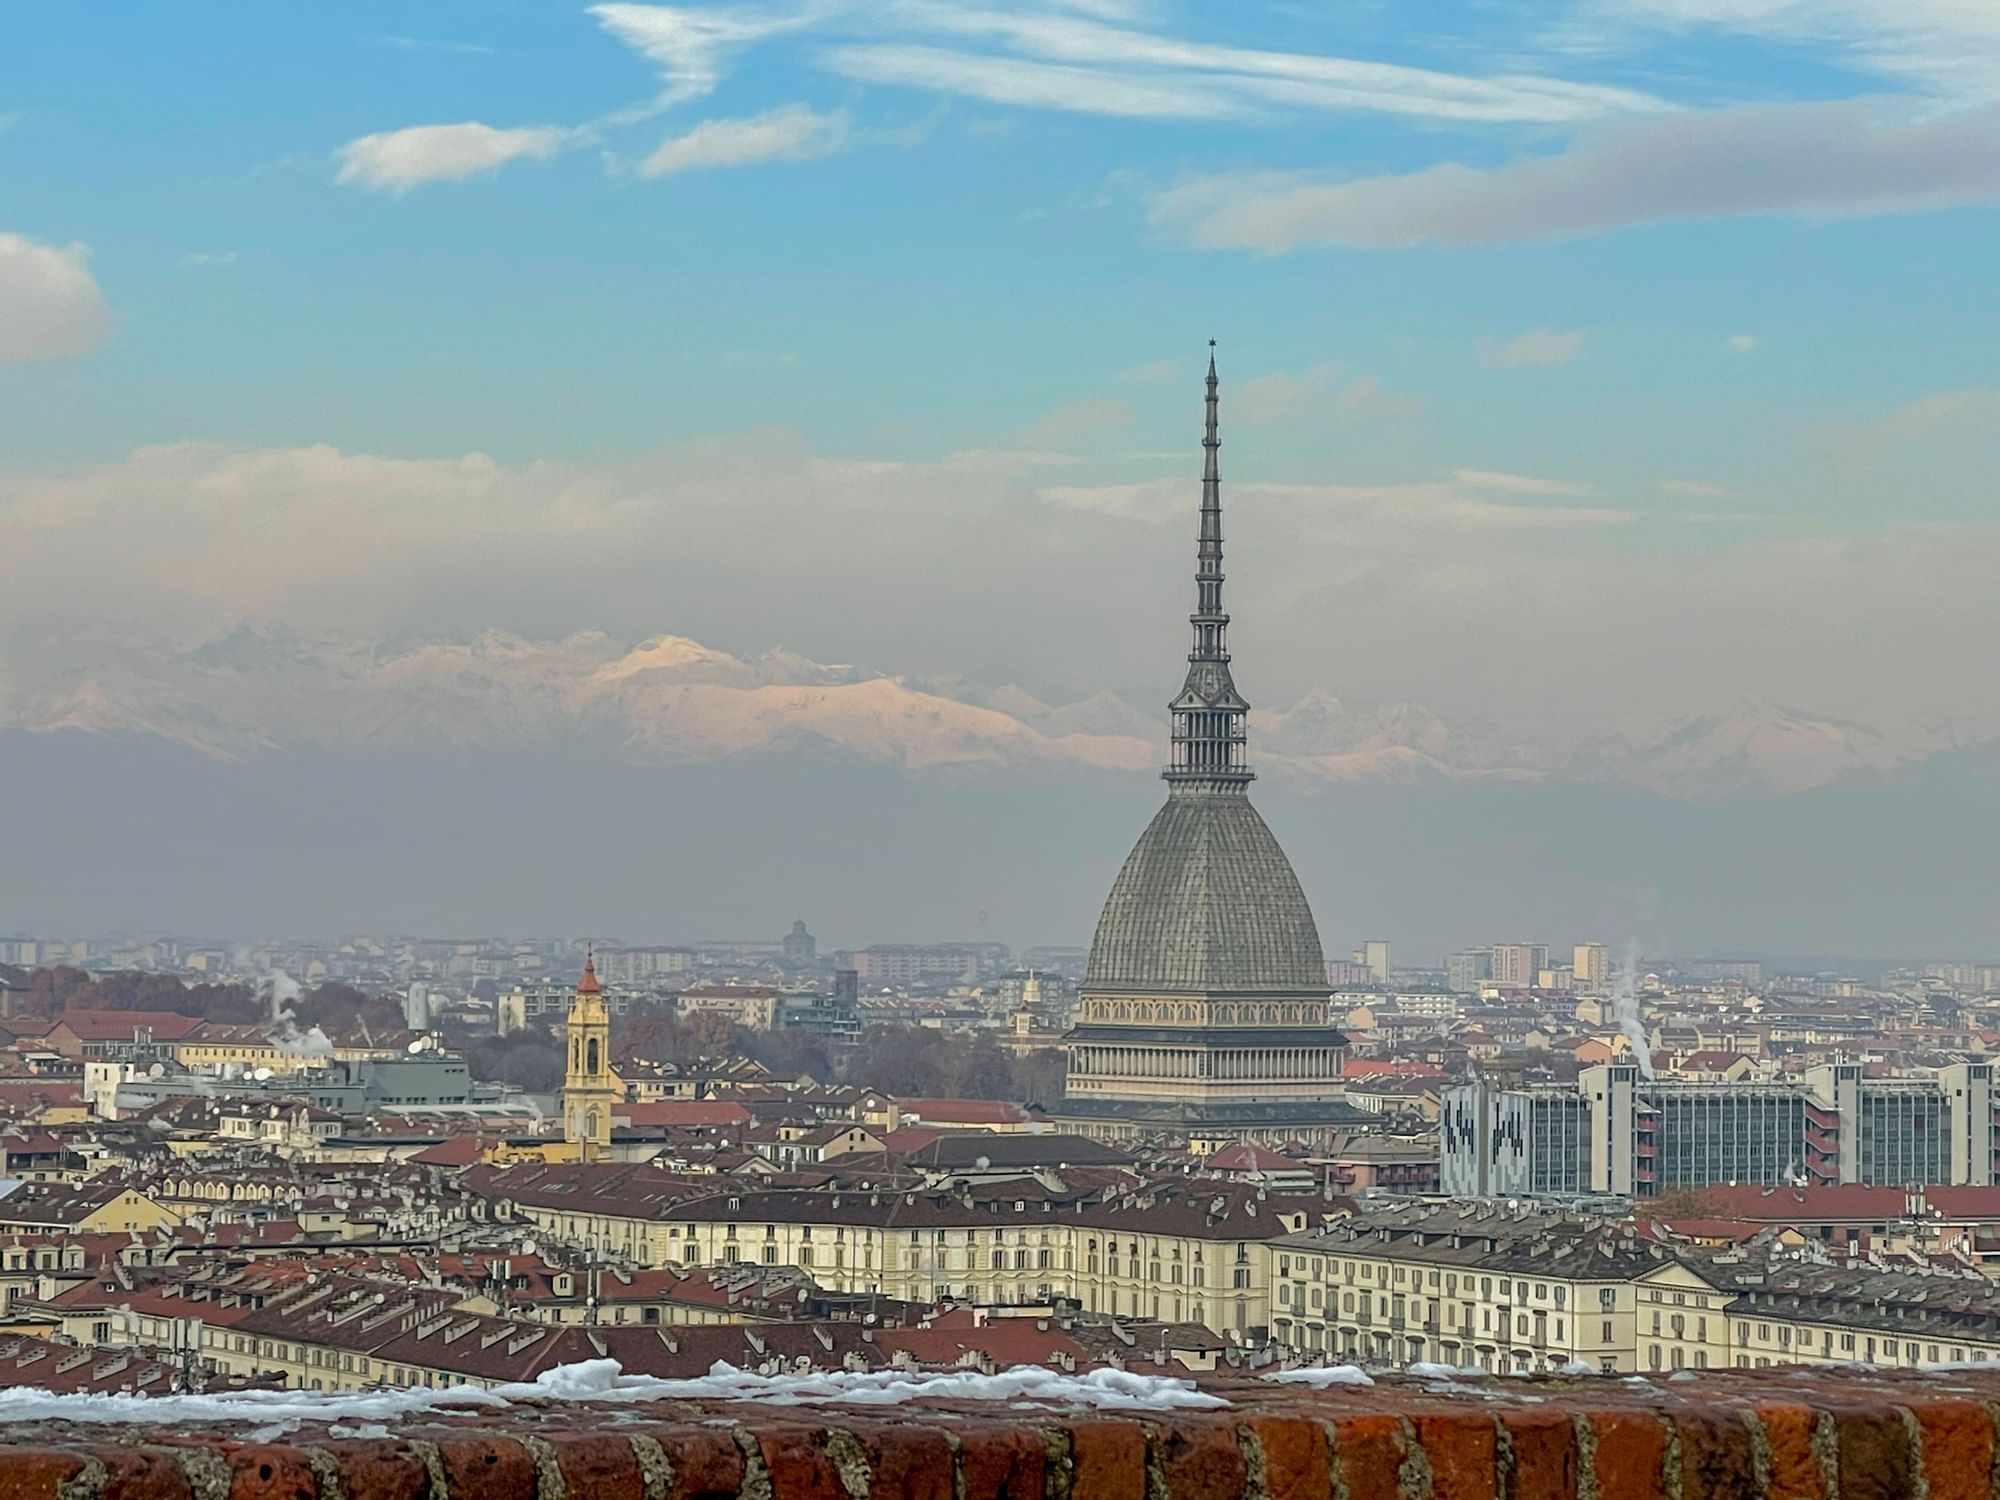 Torino attrazioni imperdibili e chicche particolari: il Monte dei Cappuccini